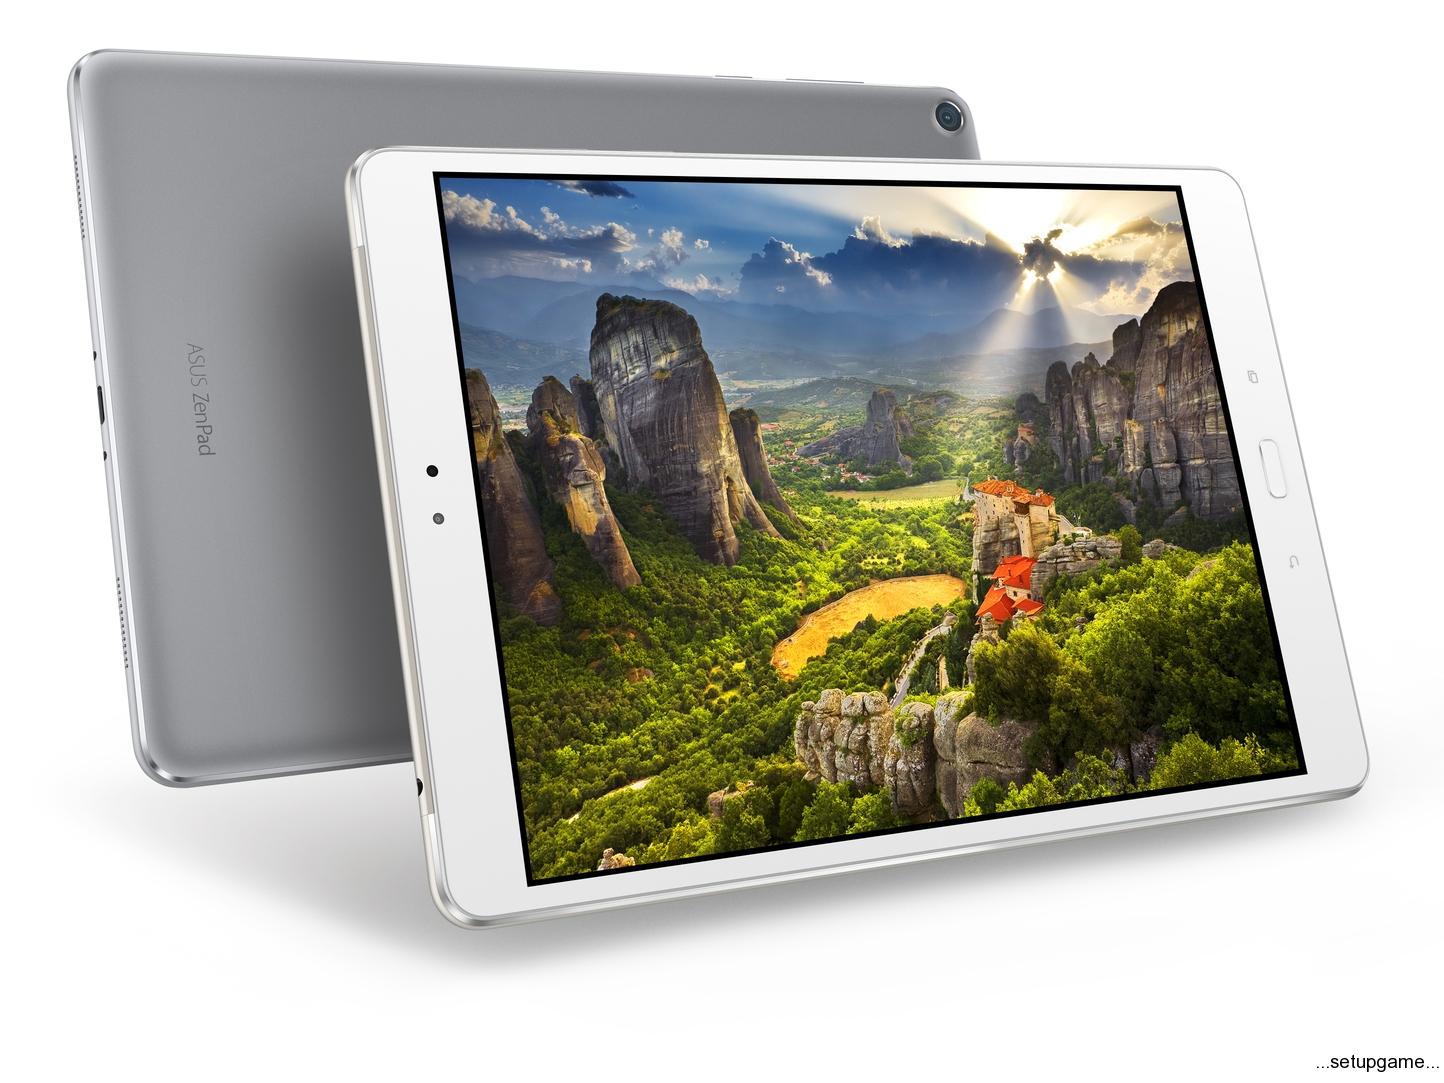 اسوس تبلت فوق العاده ZenPad 3S 10 را به عنوان رقیب سر سخت iPad Air 2 معرفی کرد